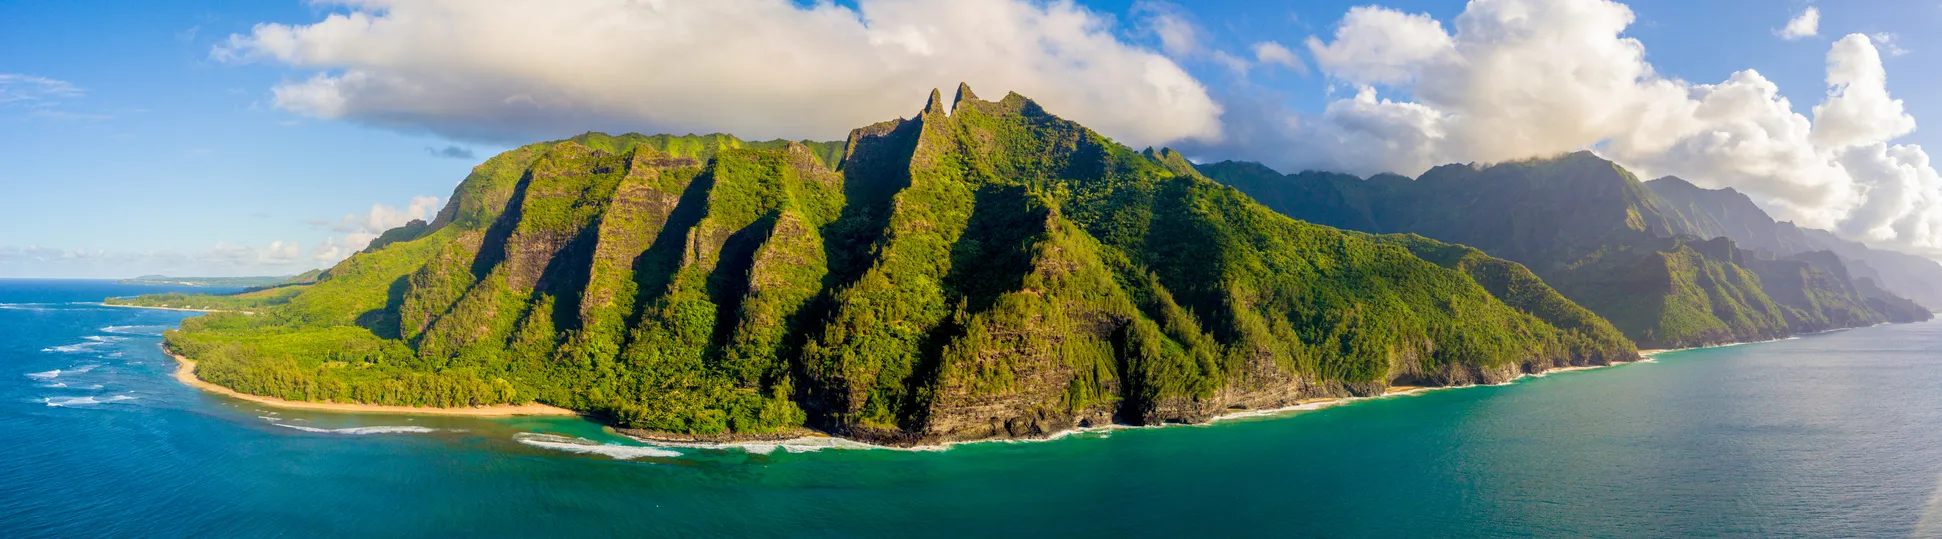 Vue panoramique sur les falaises côtières de Na Pali, île de Kauai © iStock / Ingus Kruklitis